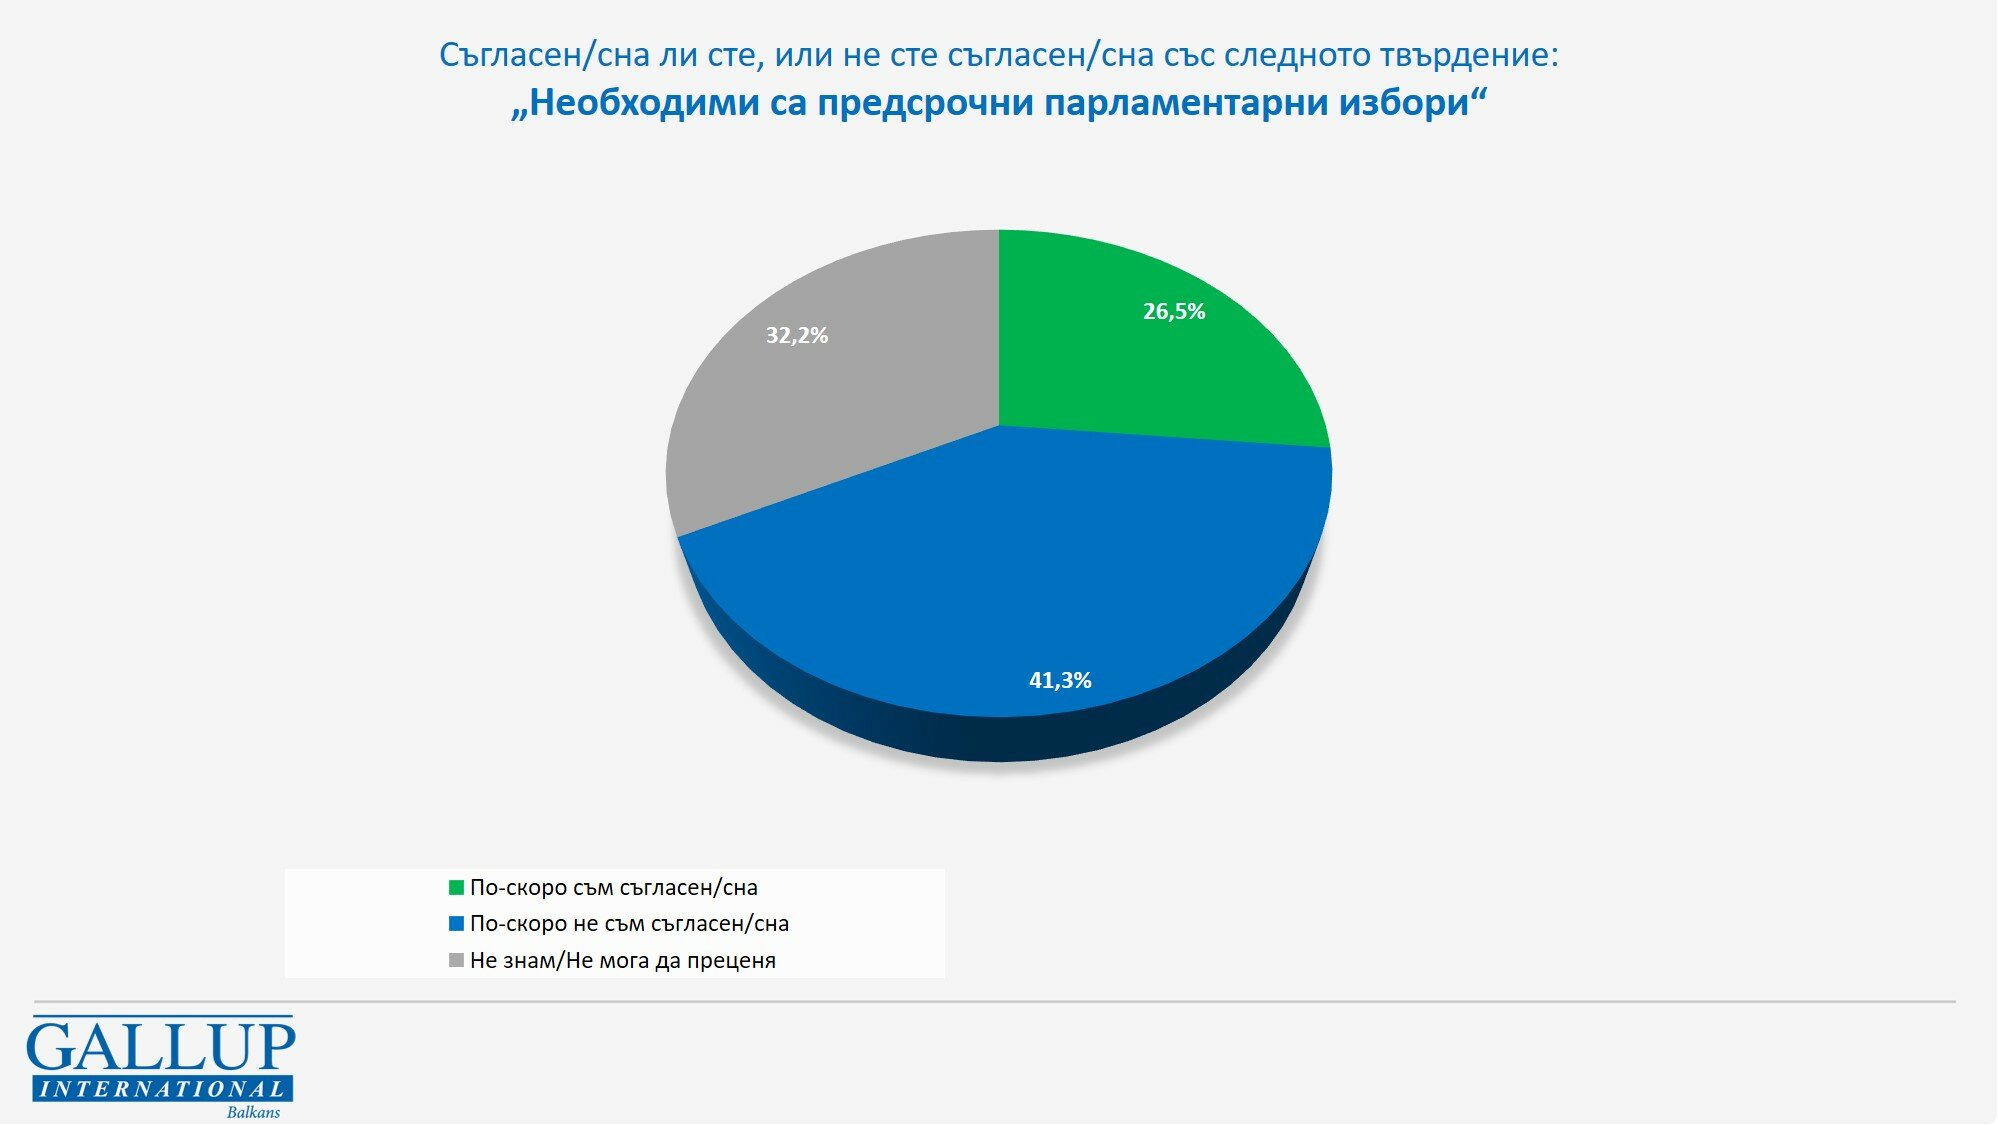 41,3% от българите по-скоро не са съгласни да има нови